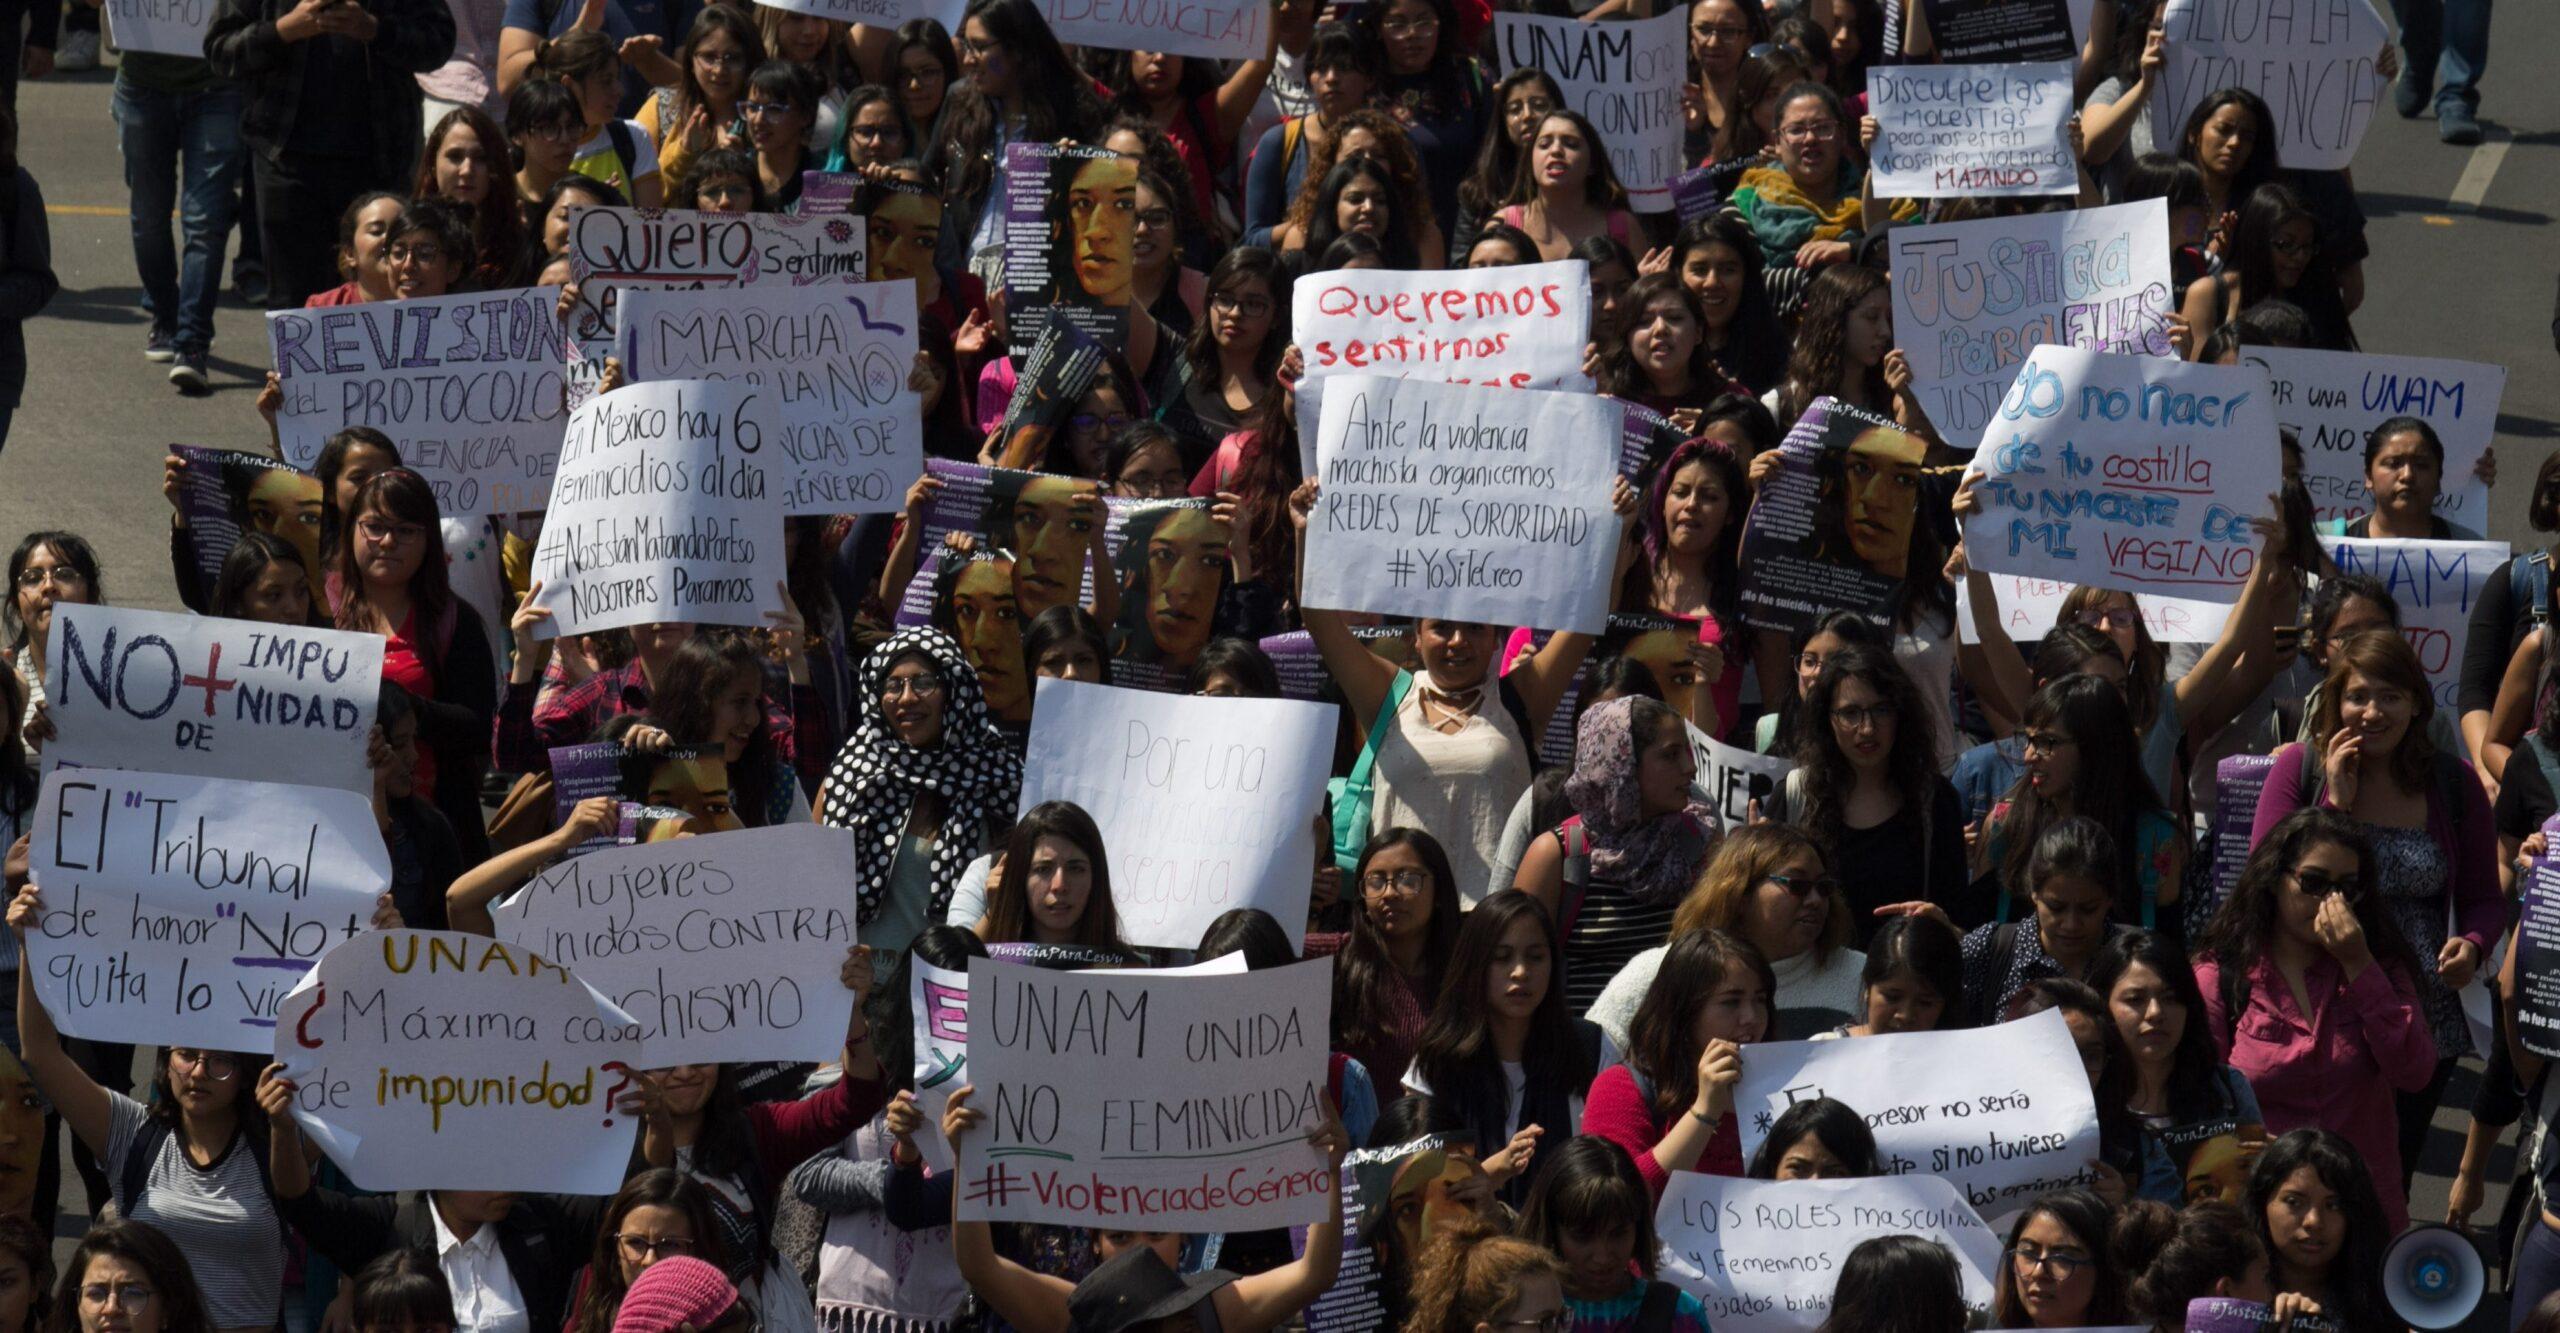 Denuncias por violencia de género en la UNAM aumentaron 11 veces en los últimos 2 años